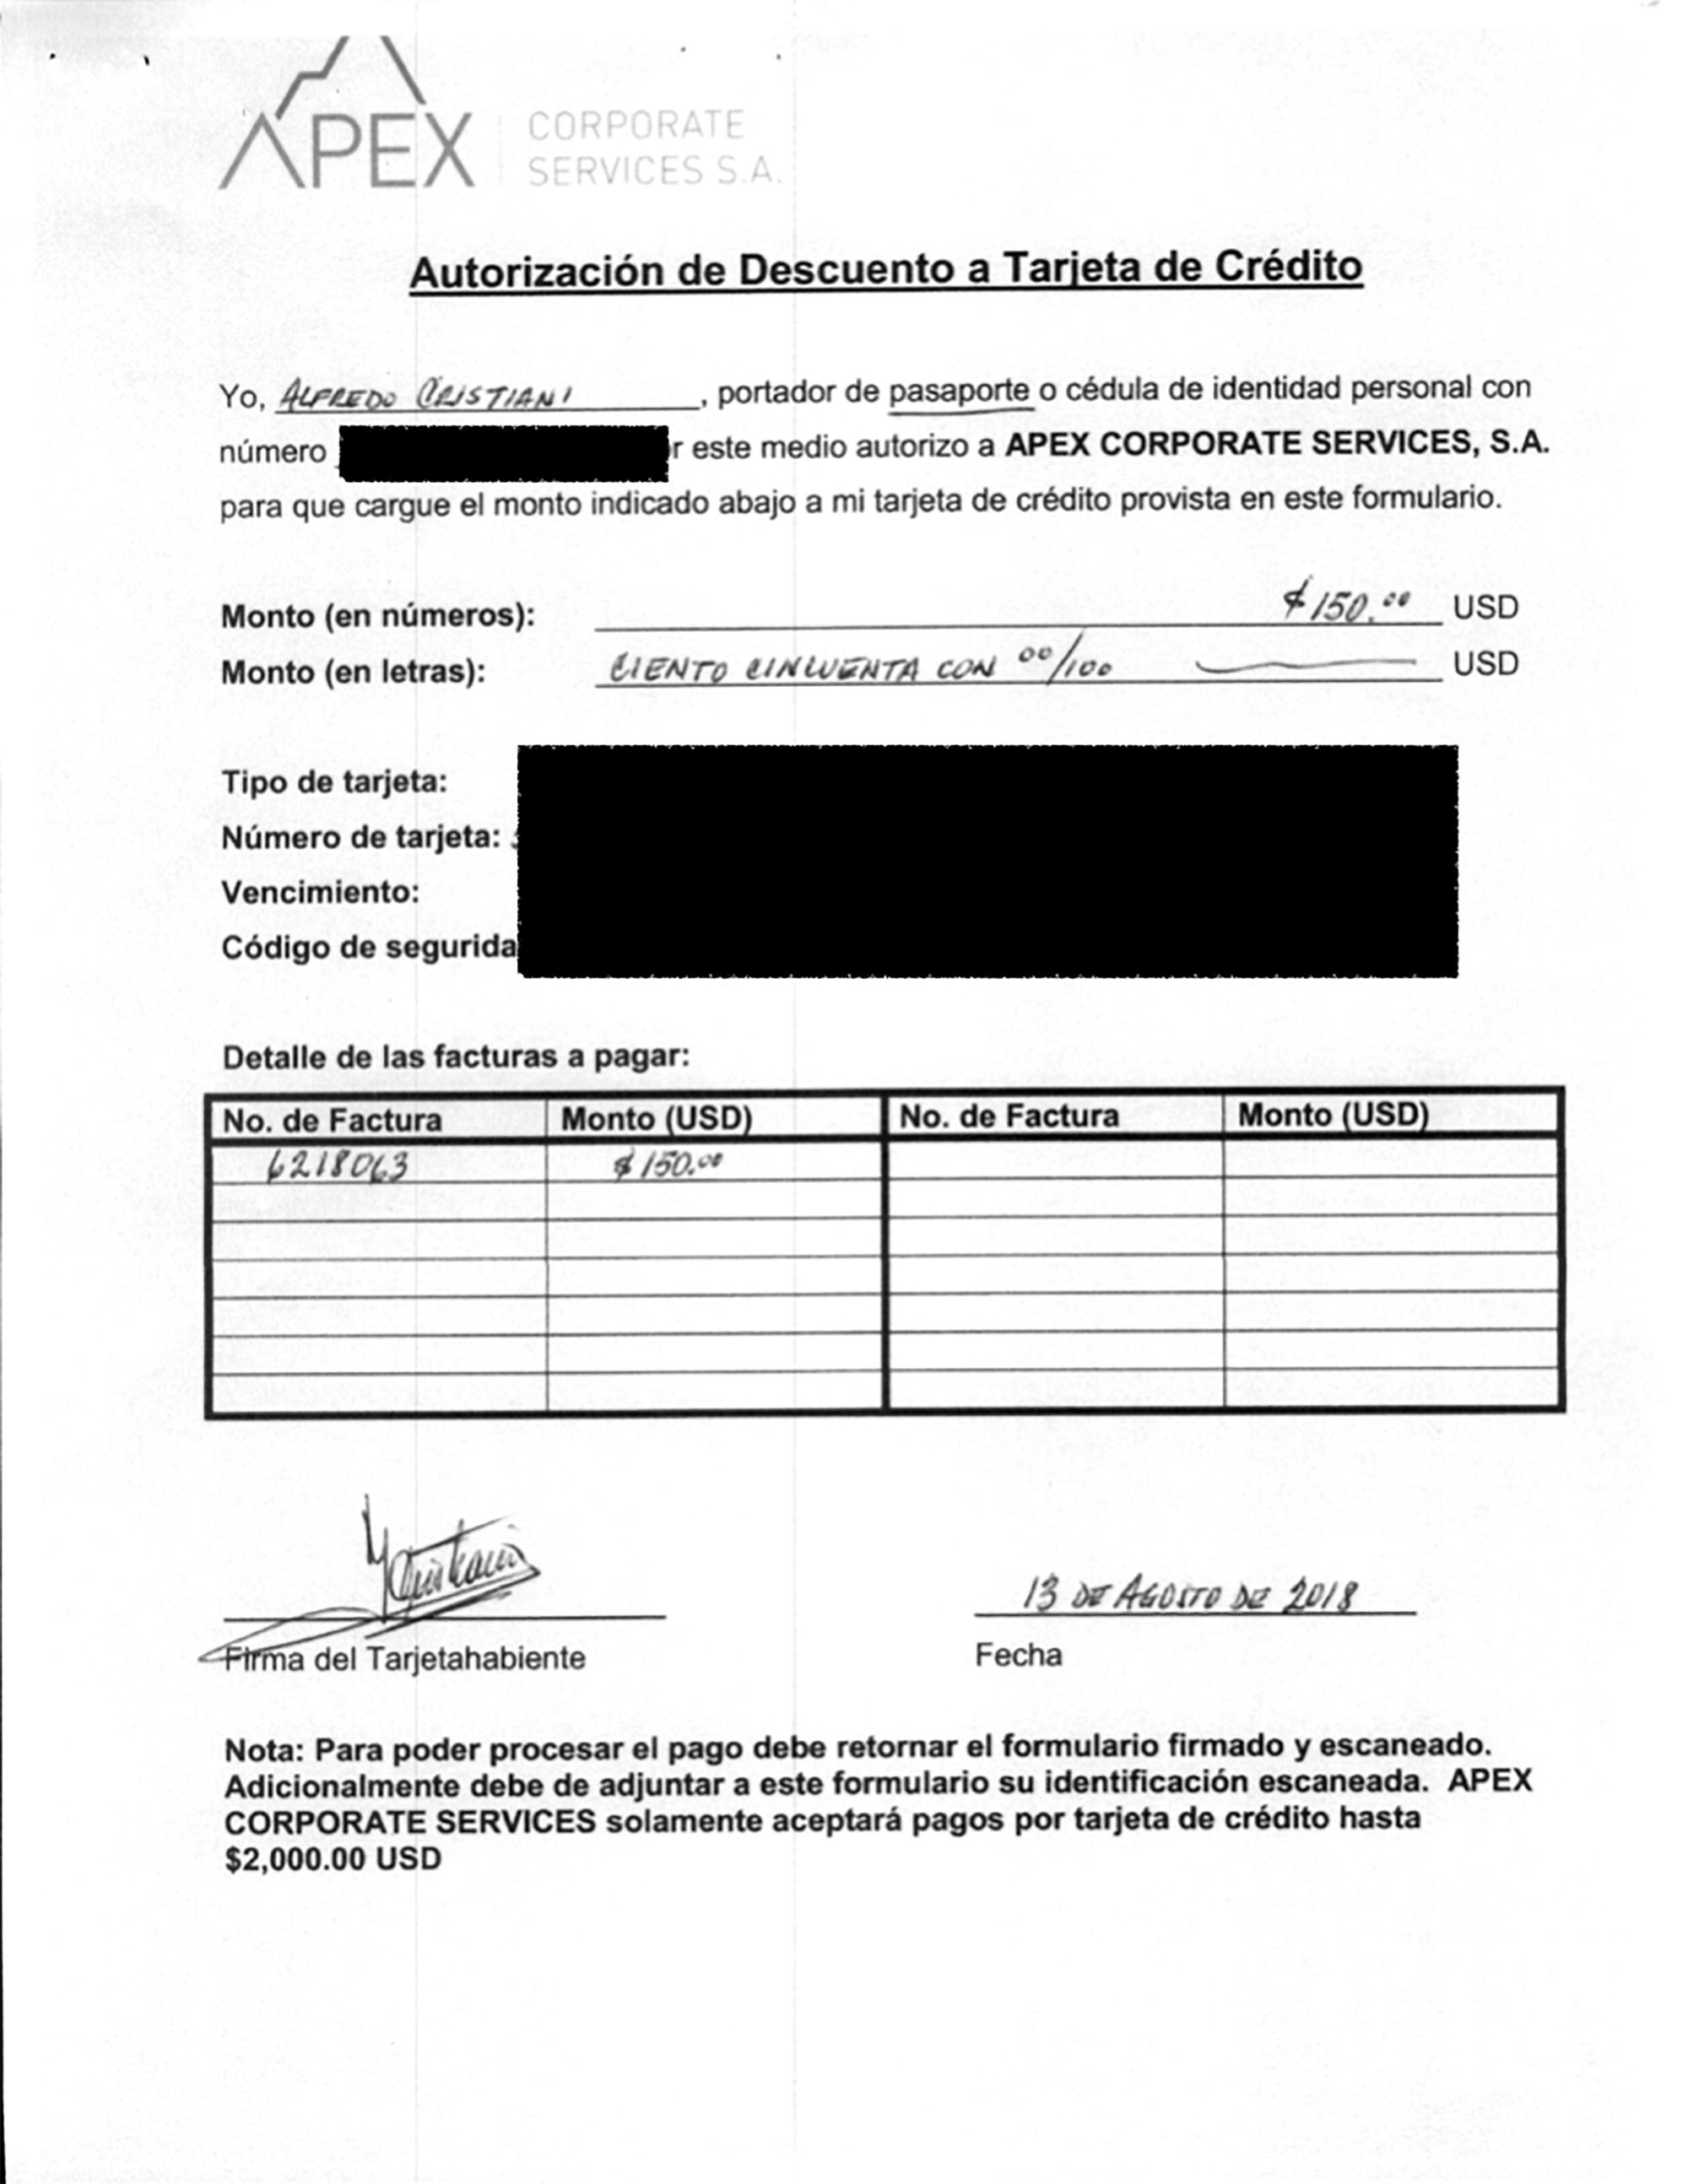 Documento que refleja el pago que hizo el expresidente Cristiani a la empresa APEX CORPORATE SERVICES, S.A.